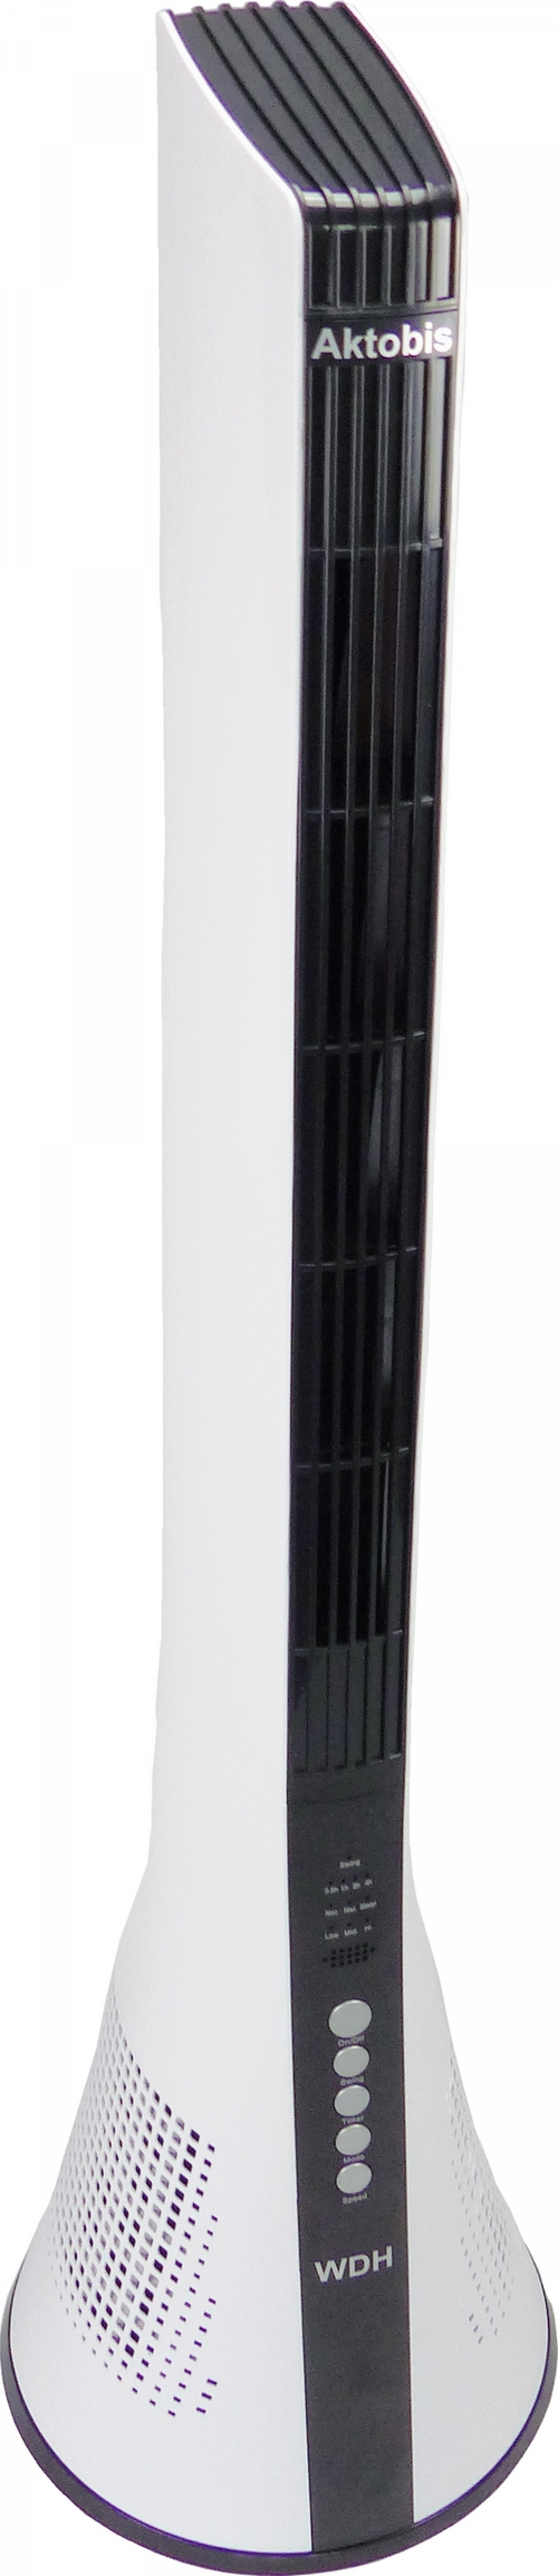 WDH-TW1803 (40 WDH Weiß Ventilator Turmventilator Watt)